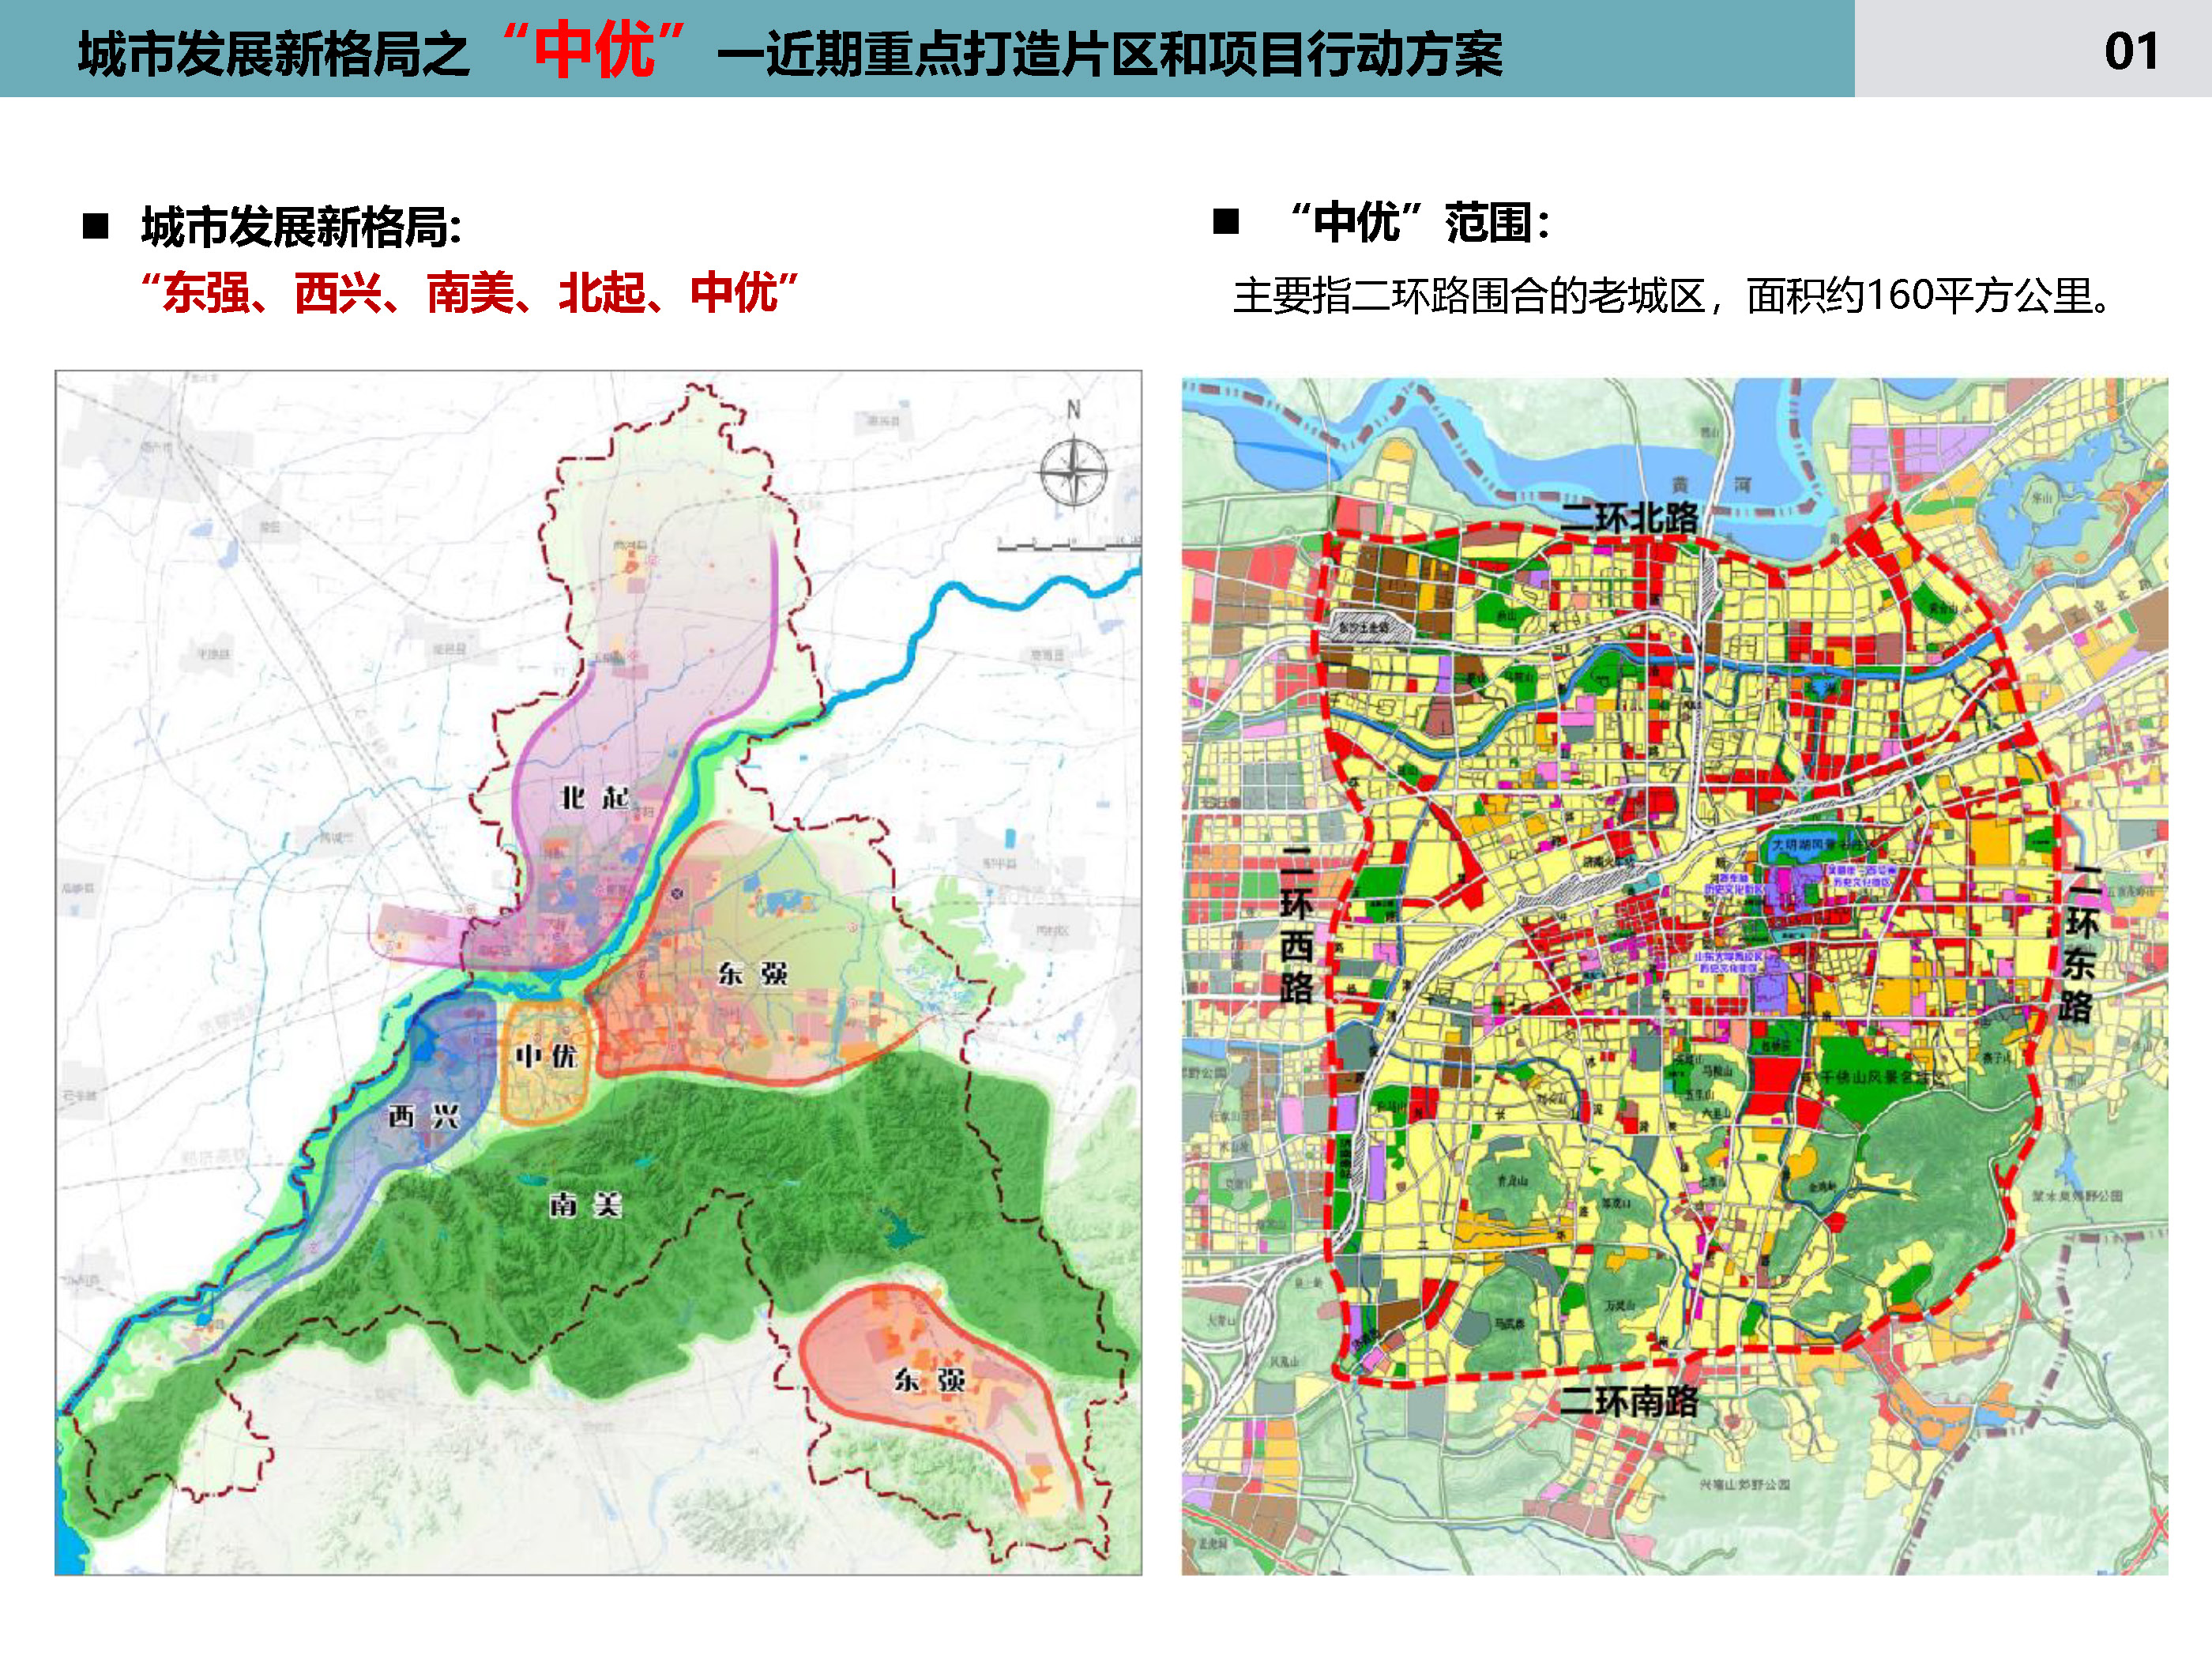 11月18日,济南市自然资源和规划局发布关于征求《城市发展新格局之中